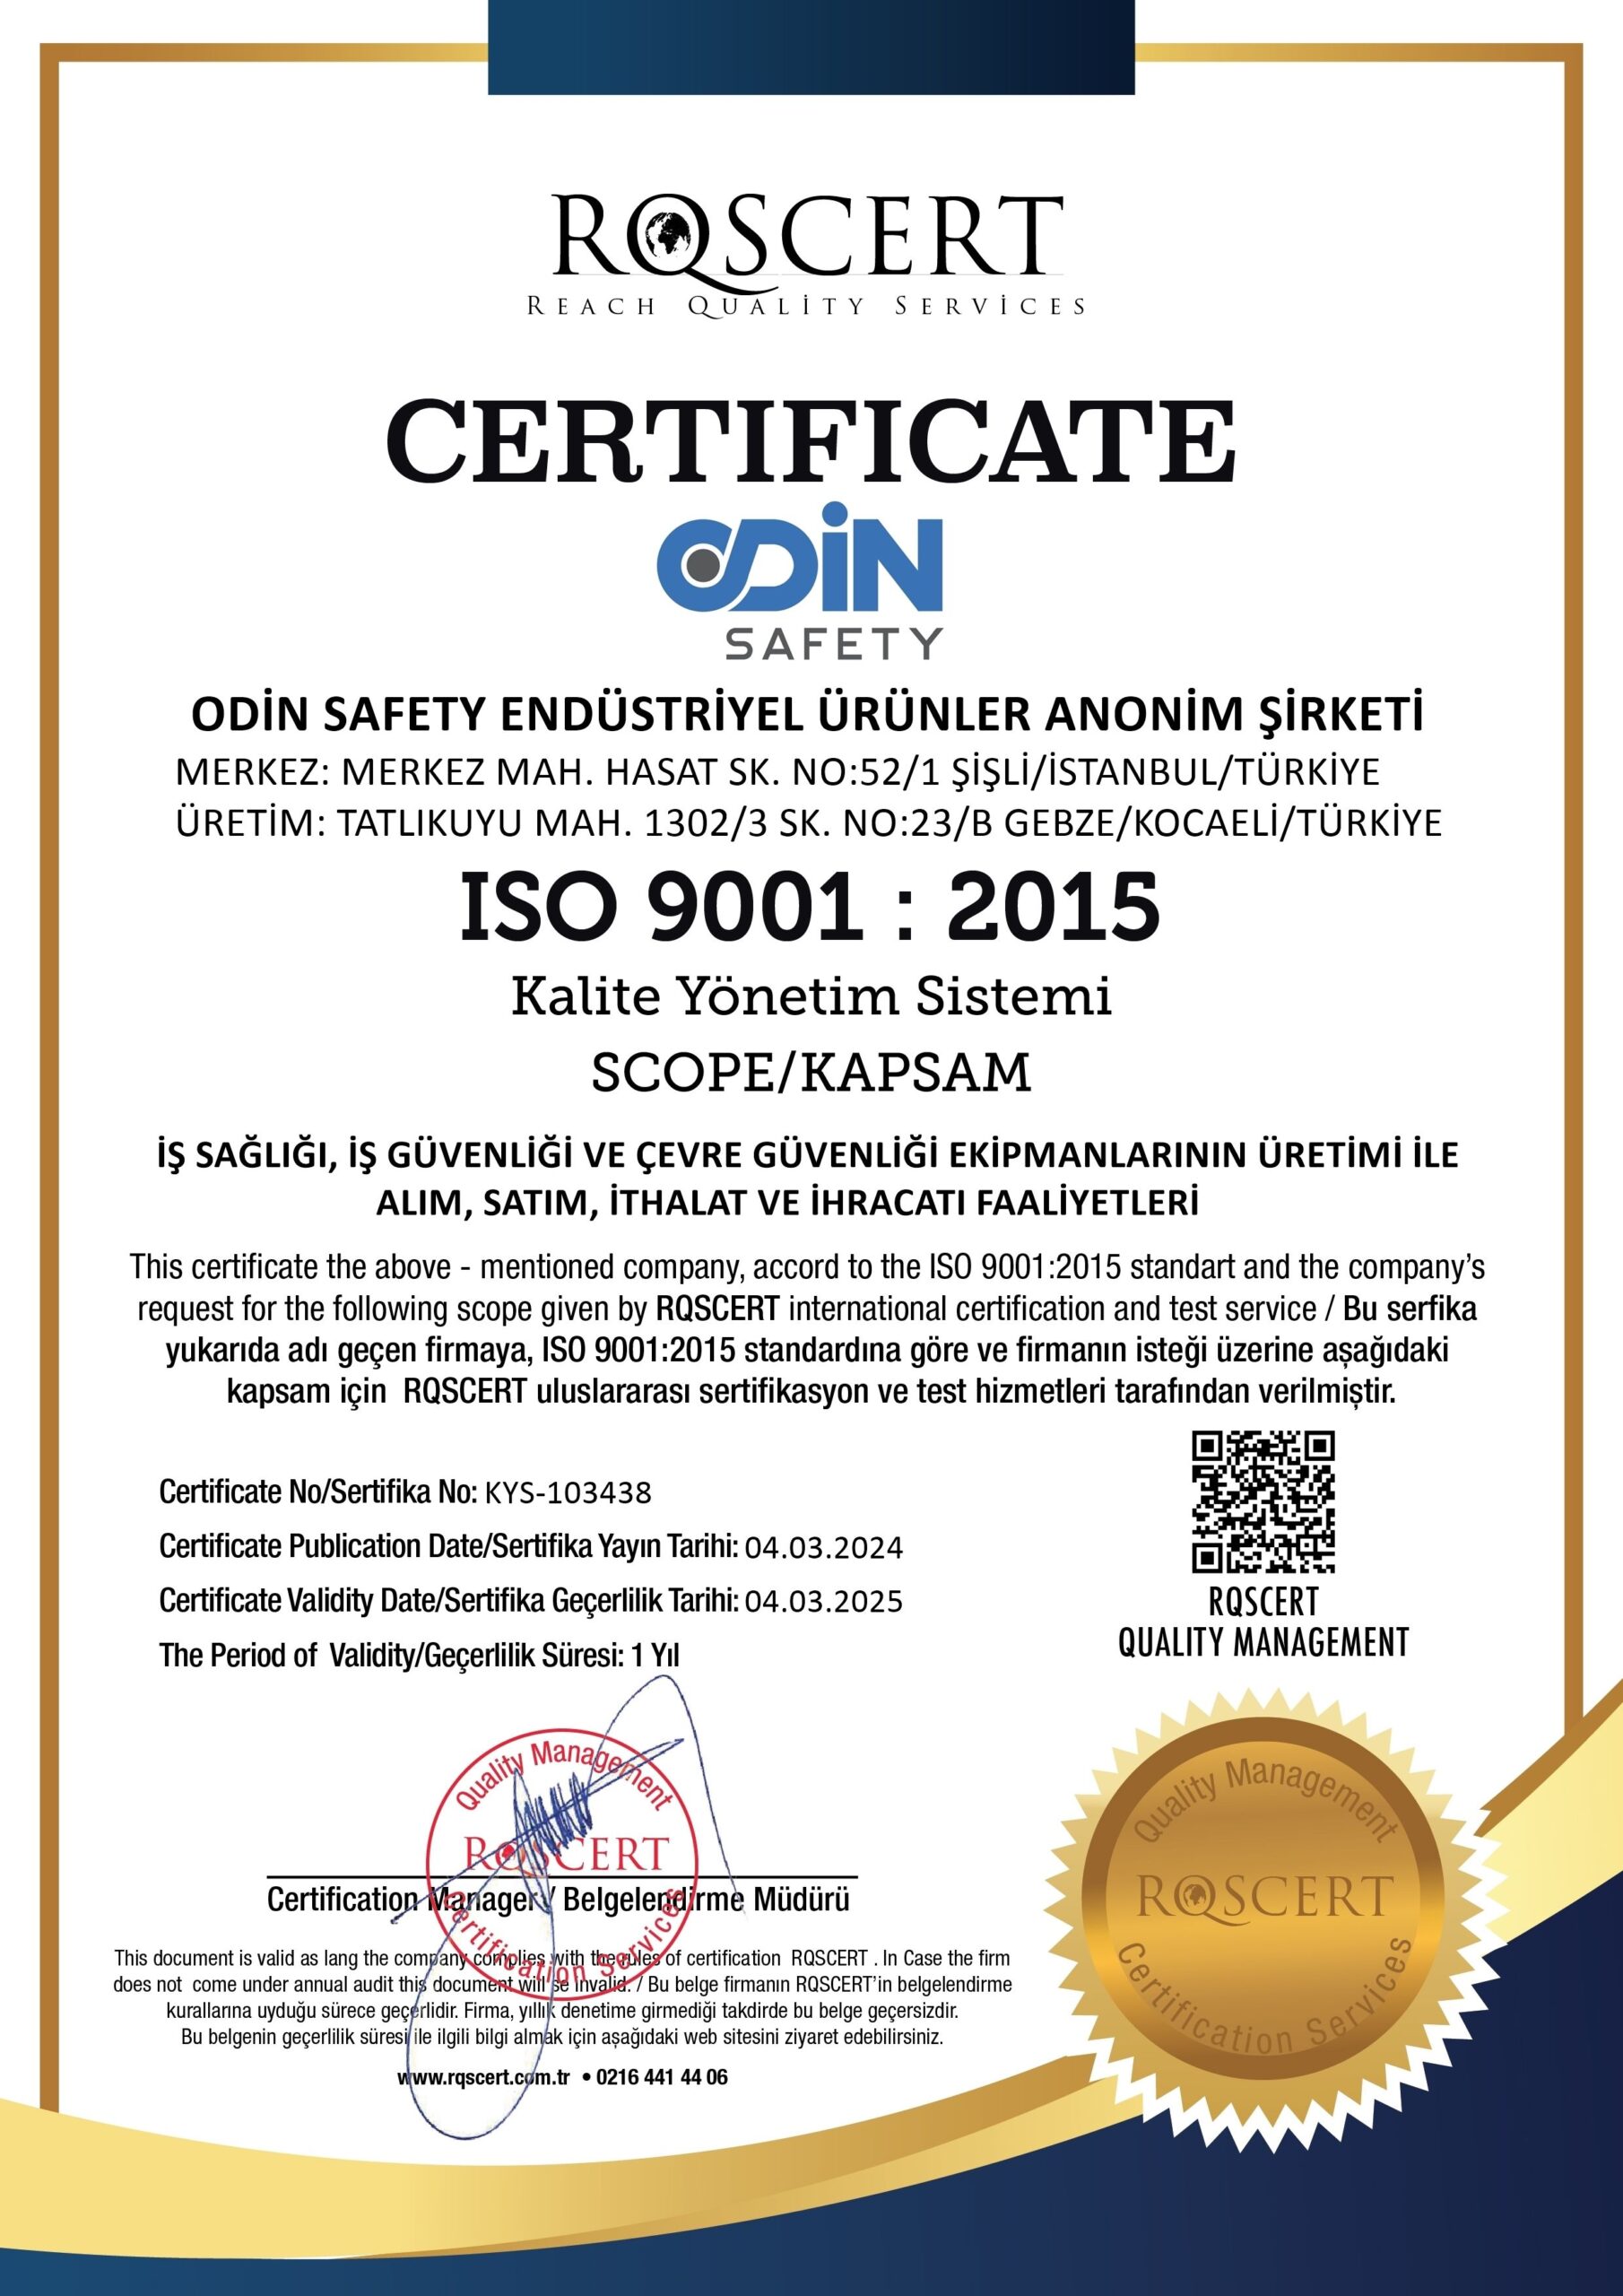 ODİN SAFETY ISO 9001